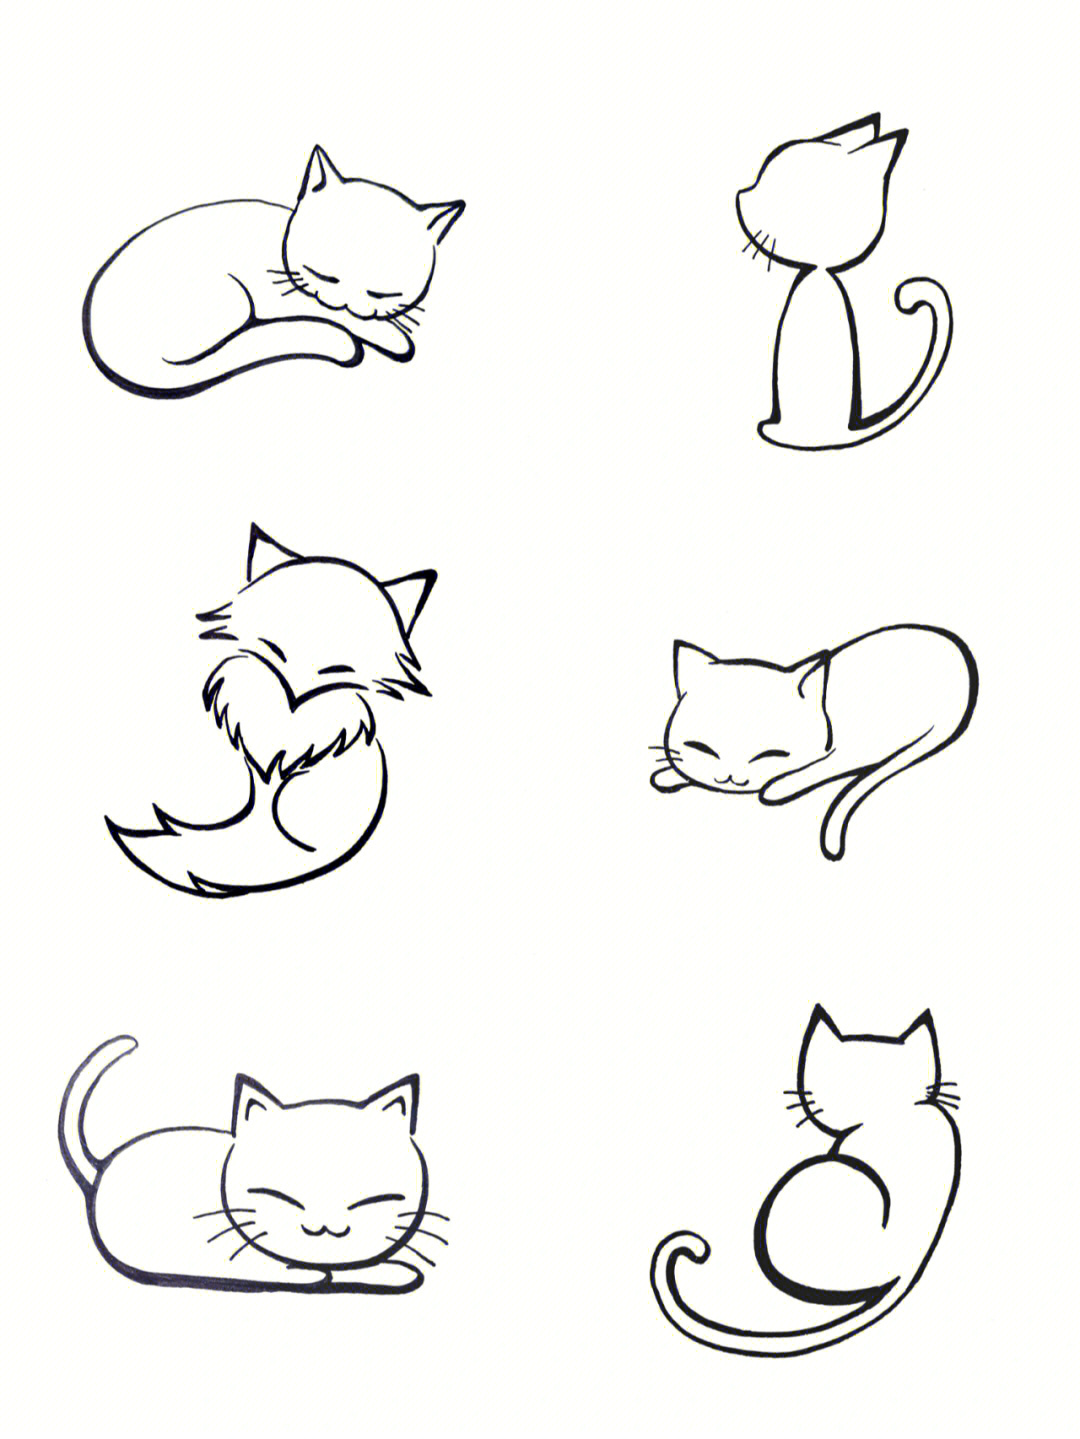 适合女孩子小巧纹身的简单可爱猫咪黑白图案